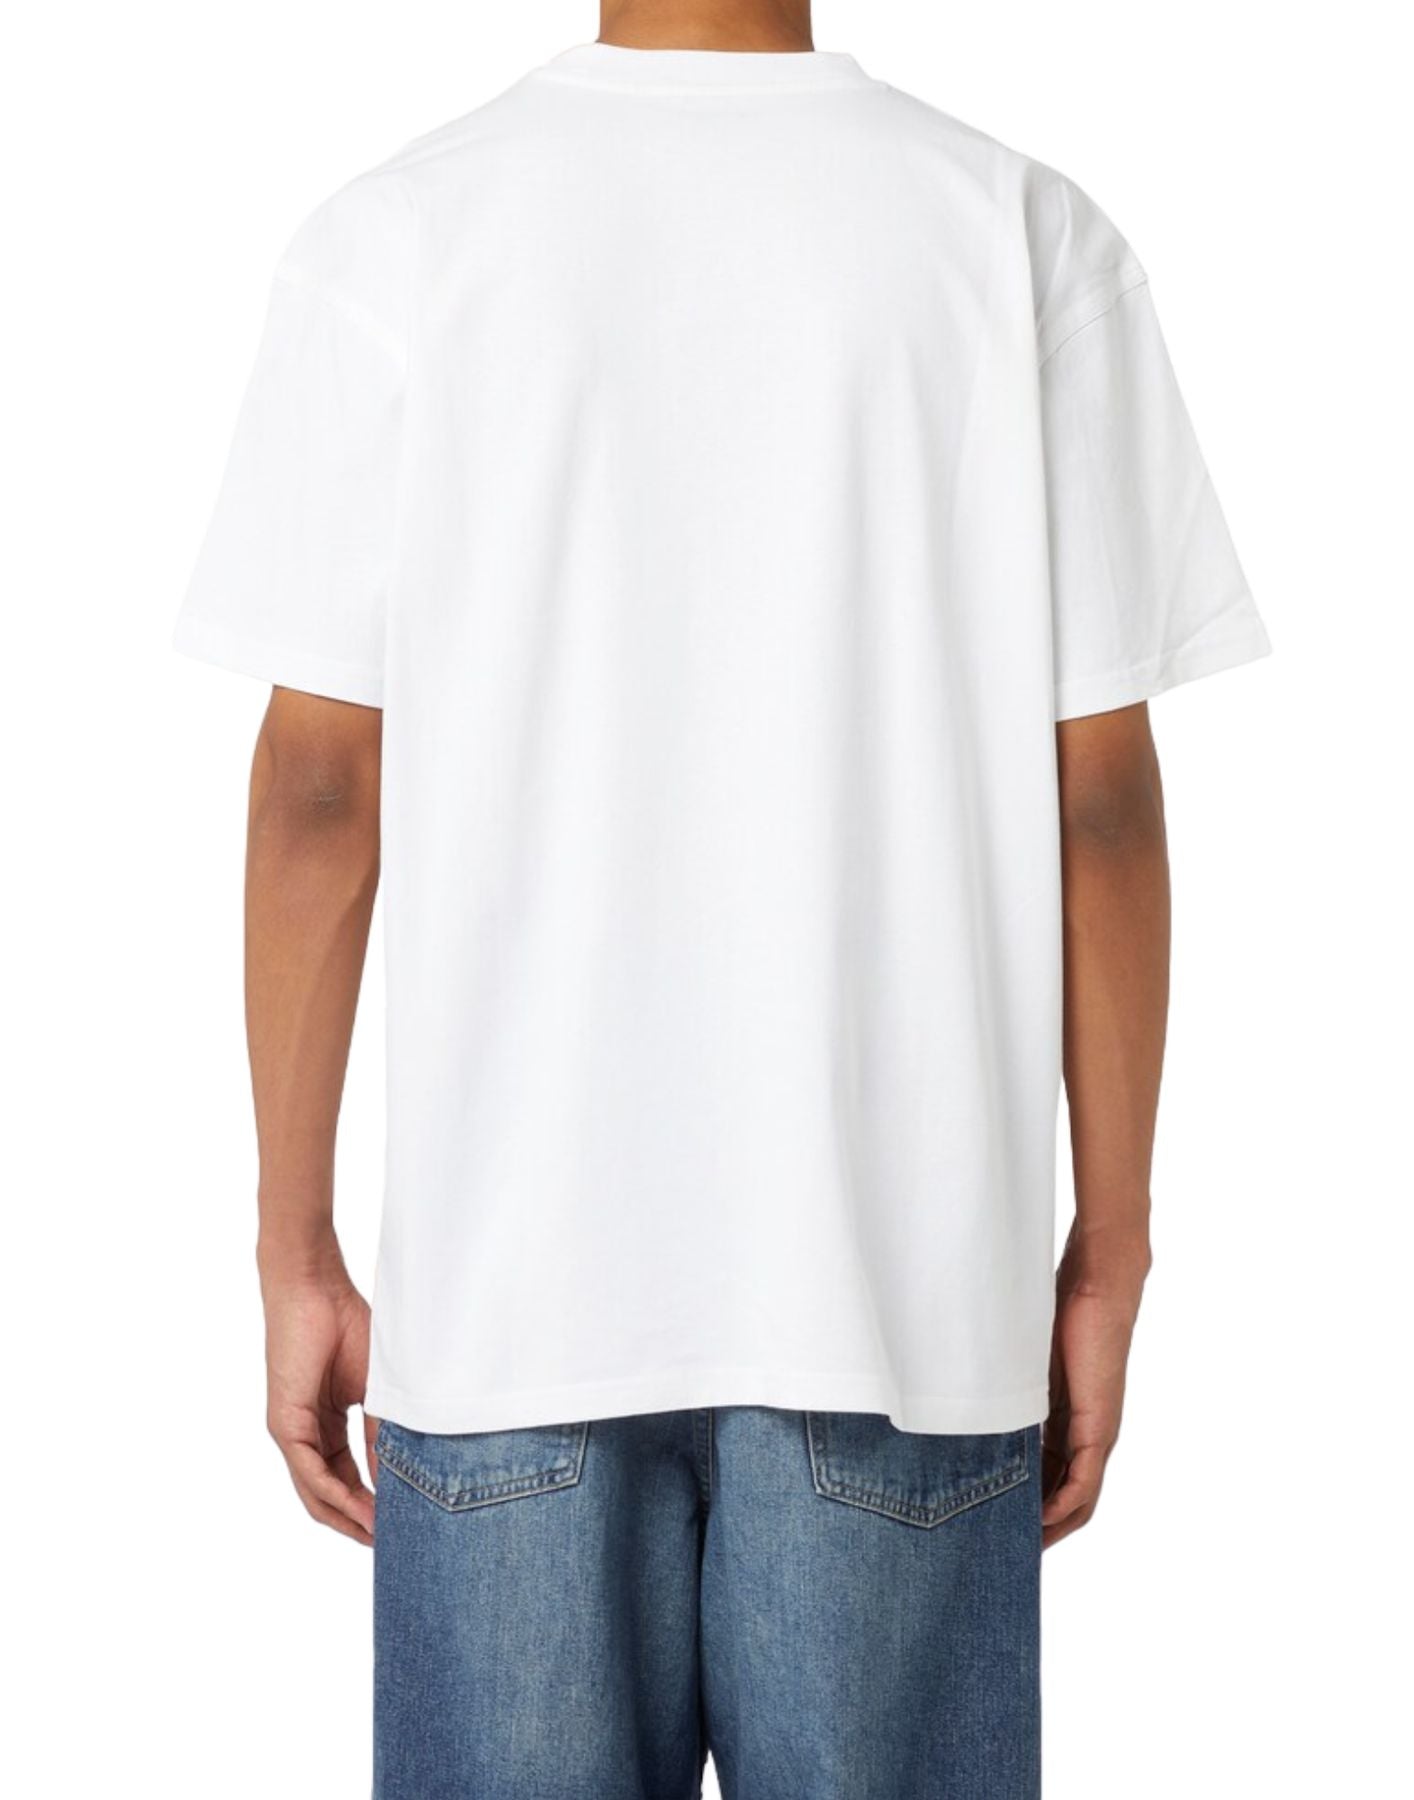 Camiseta para el hombre i029956 blanco CARHARTT WIP